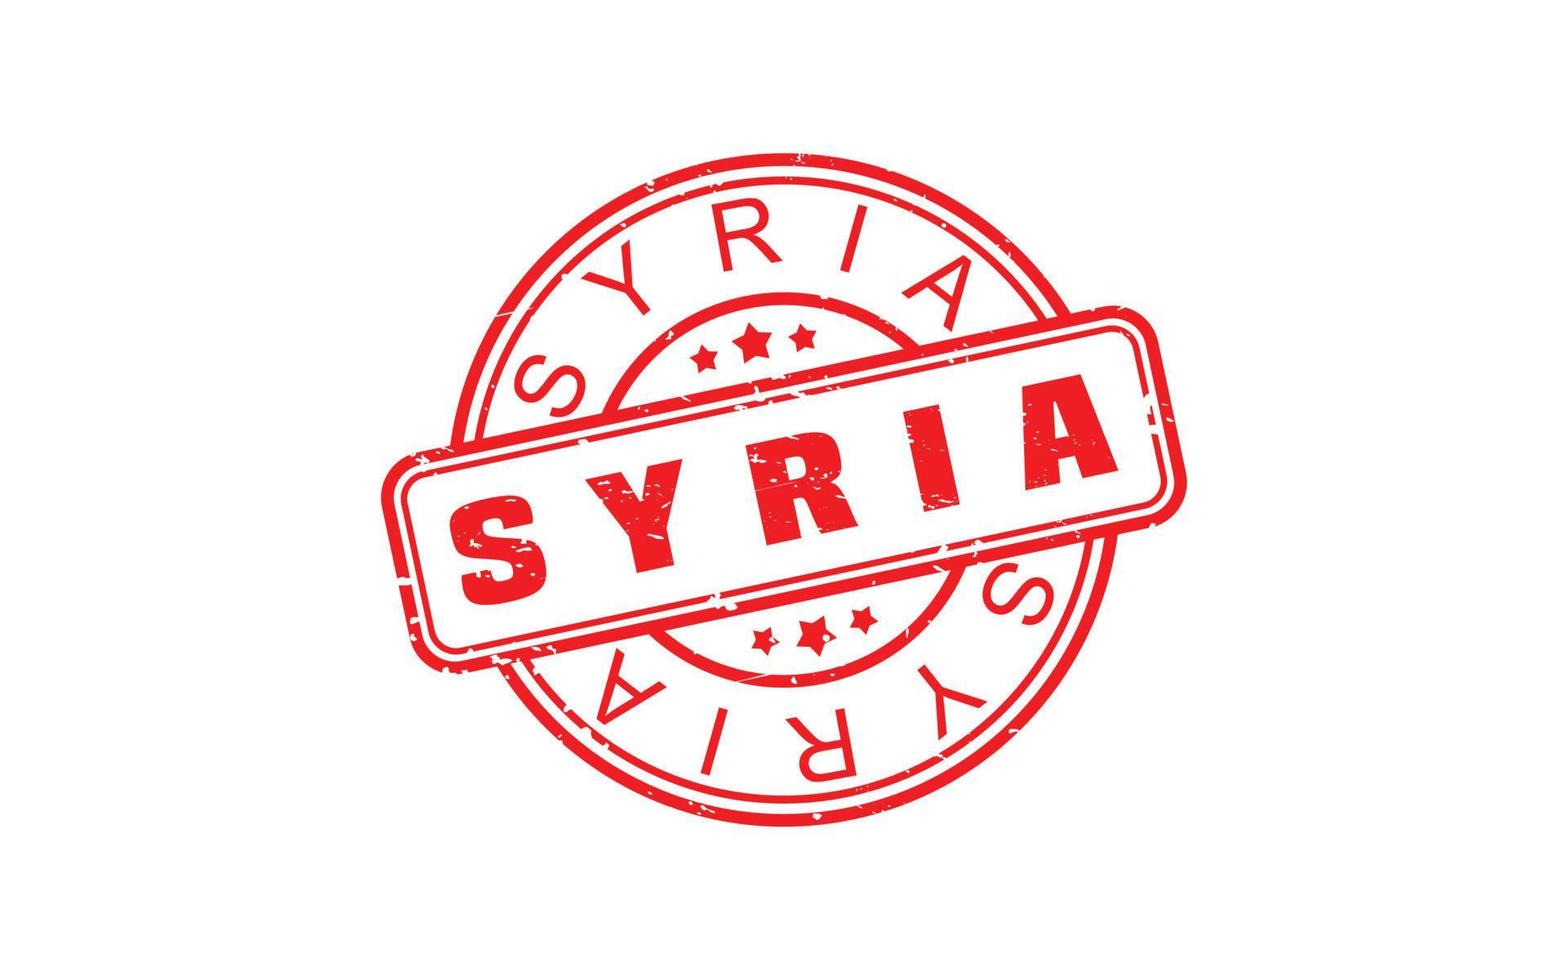 Siria francobollo gomma da cancellare con grunge stile su bianca sfondo vettore